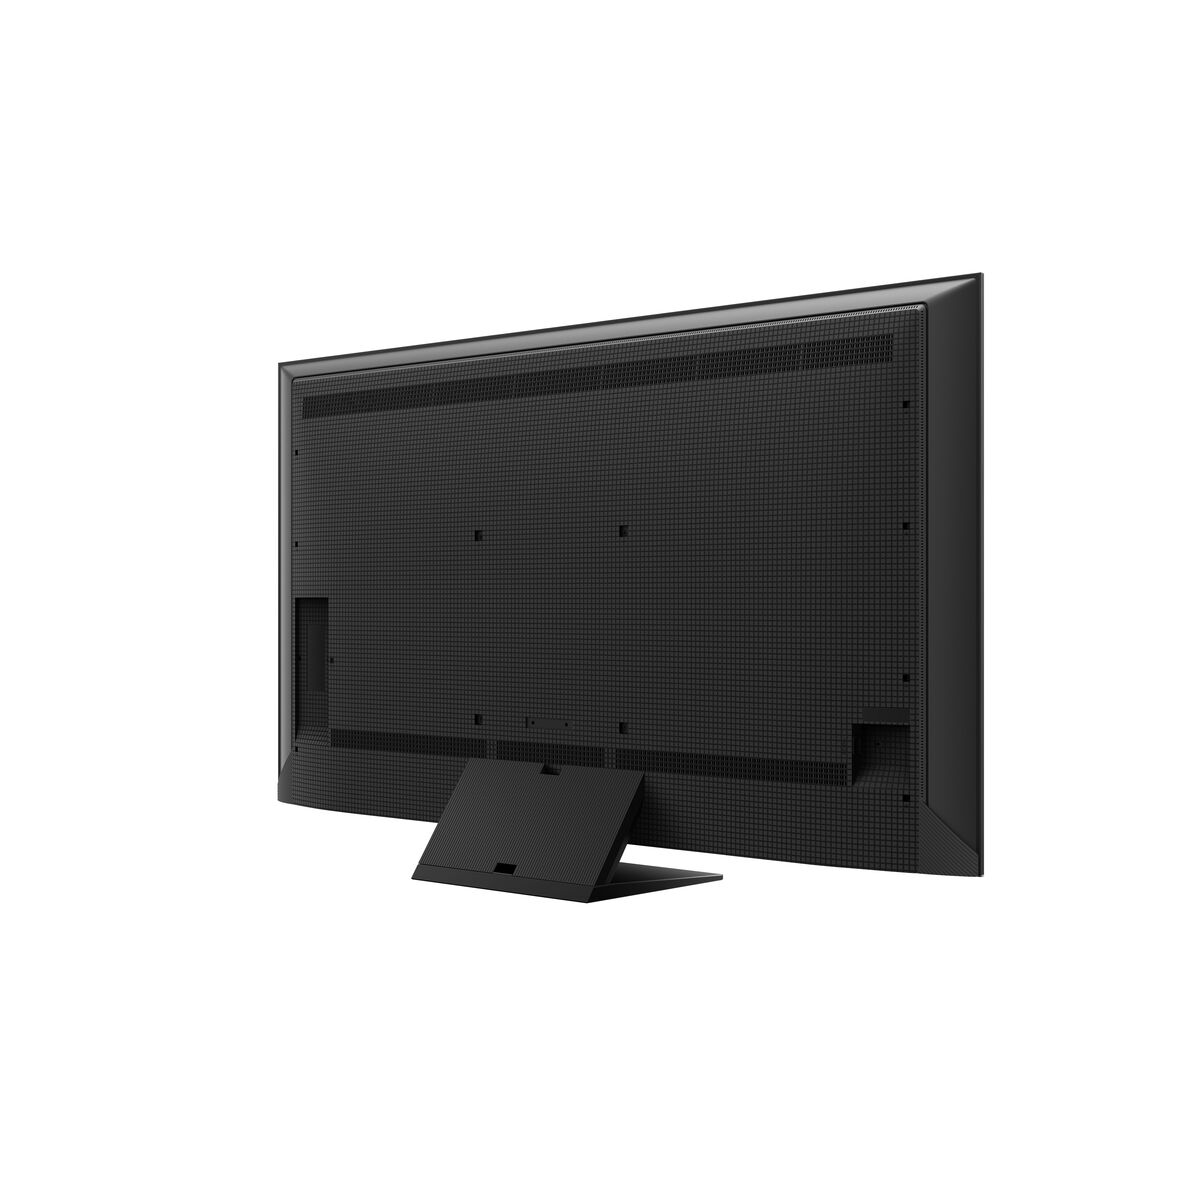 Телевизор TCL 65C805 купить - цена, отзывы, характеристики